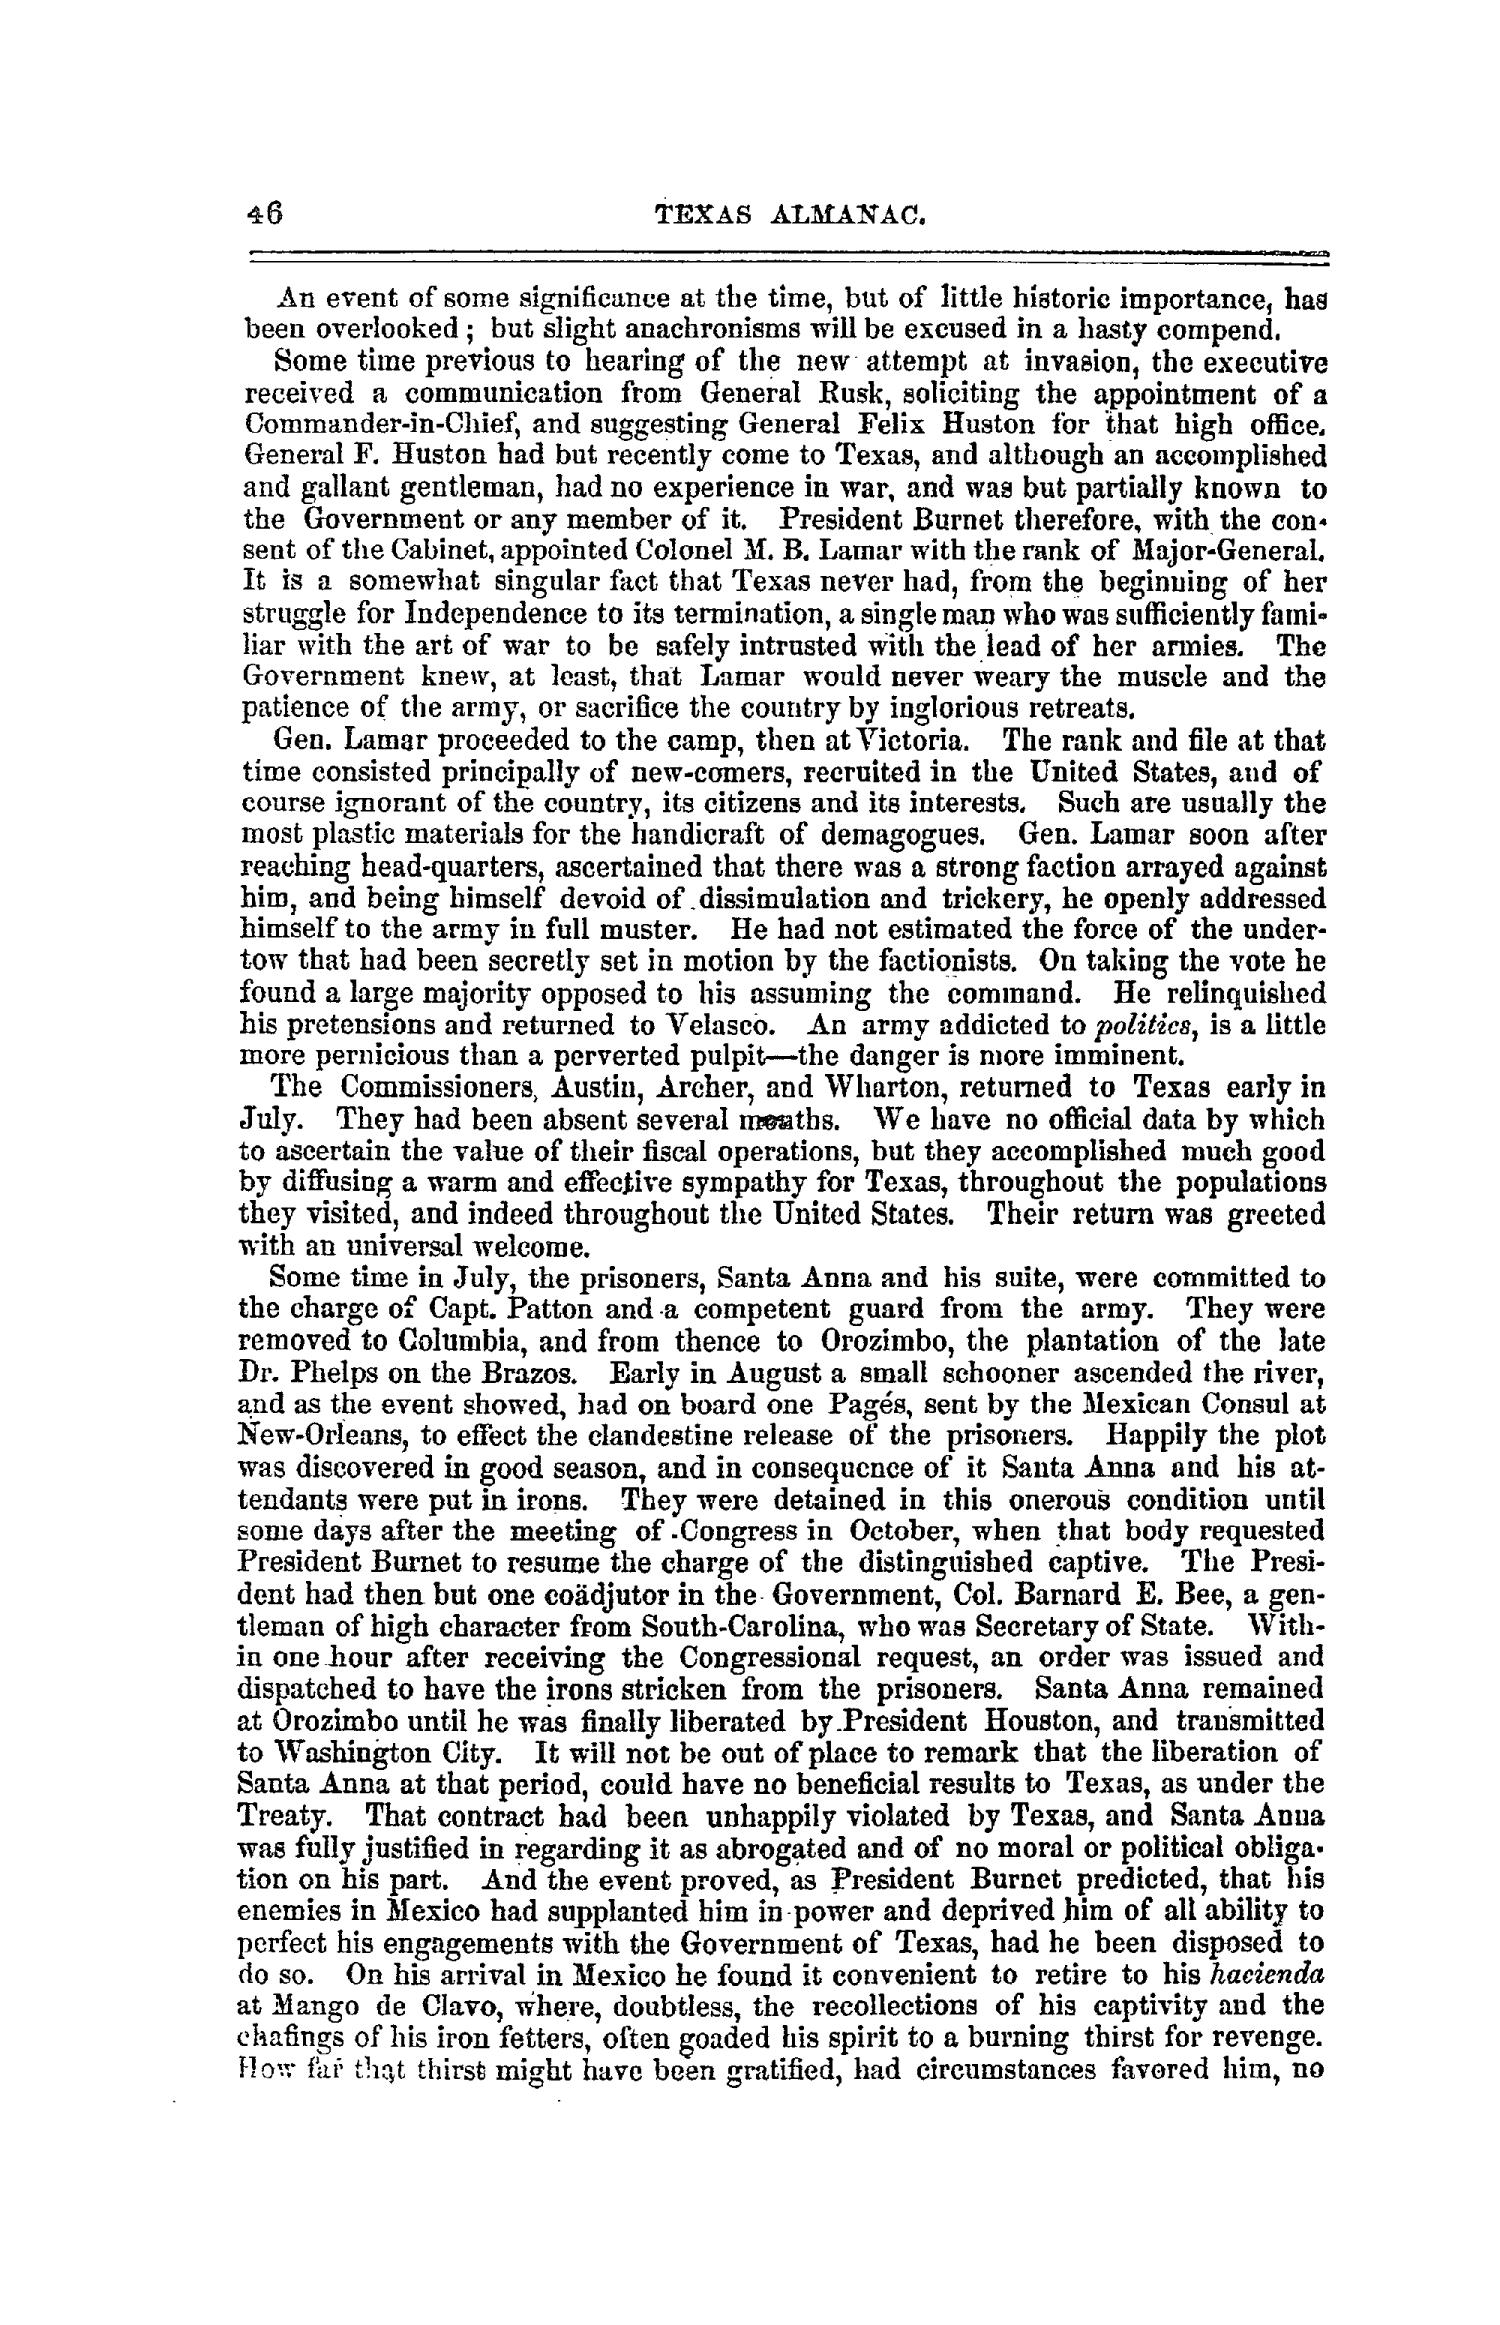 The Texas Almanac for 1861
                                                
                                                    46
                                                